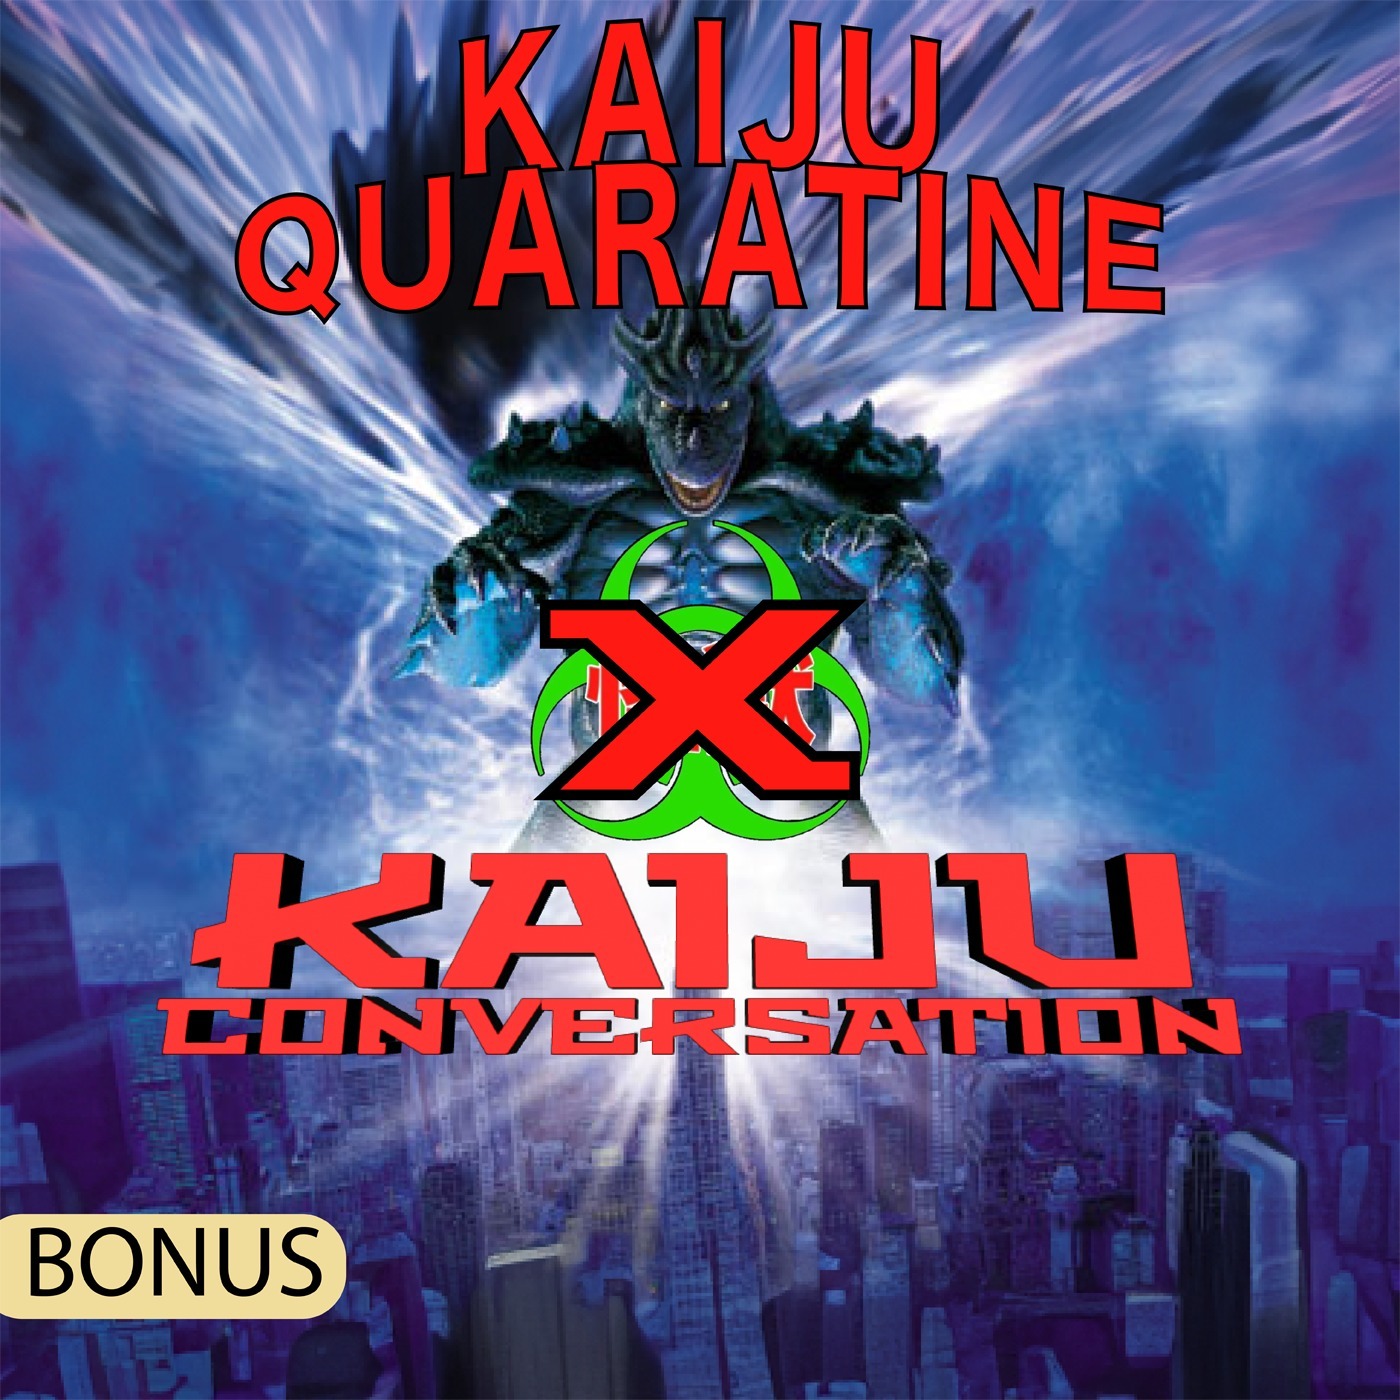 Bonus Episode 21: Kaiju Quarantine Reptilian (2001) Commentary